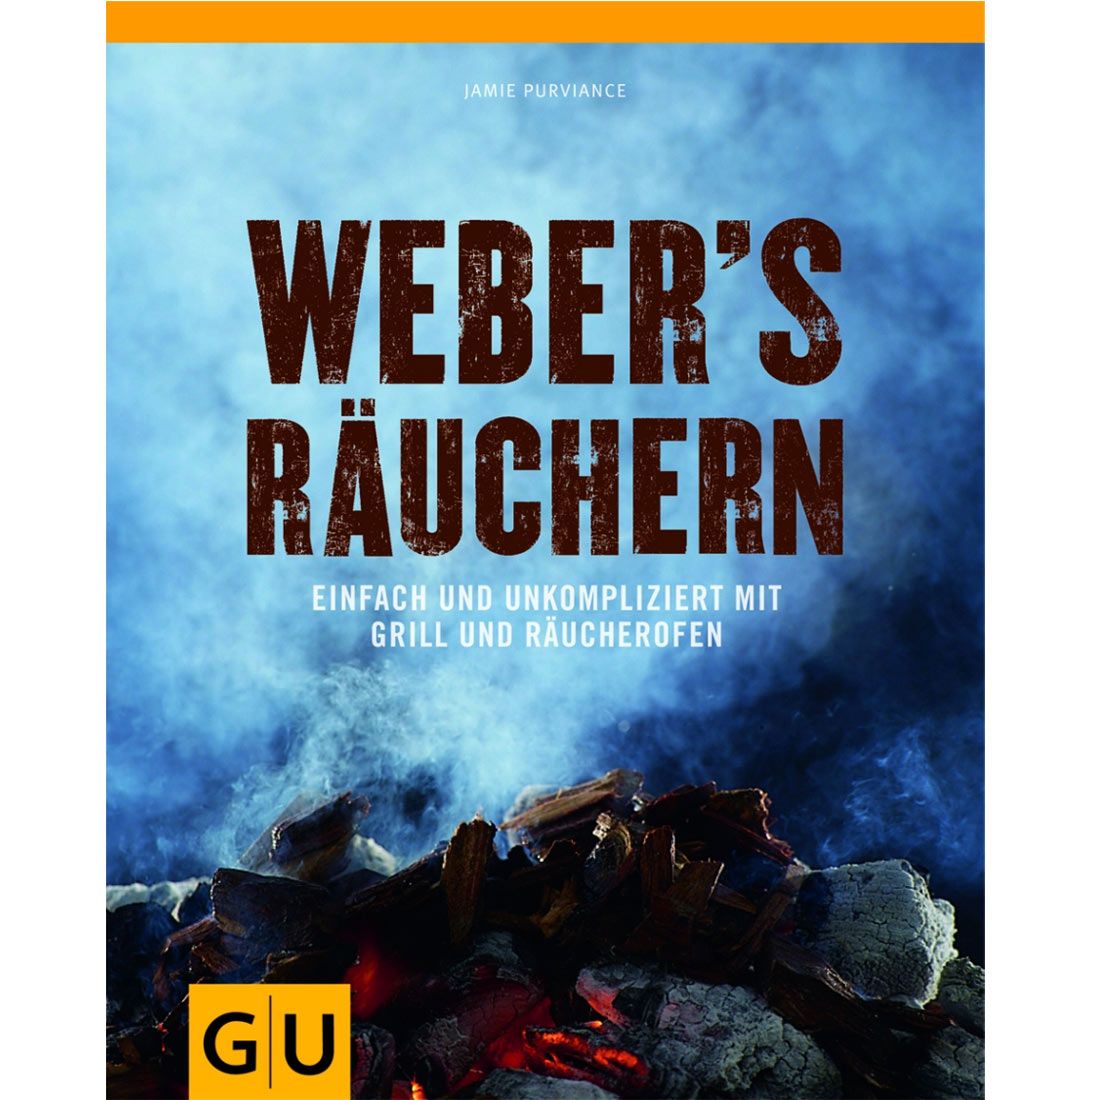 Weber Grillbuch "Weber's Räuchern"